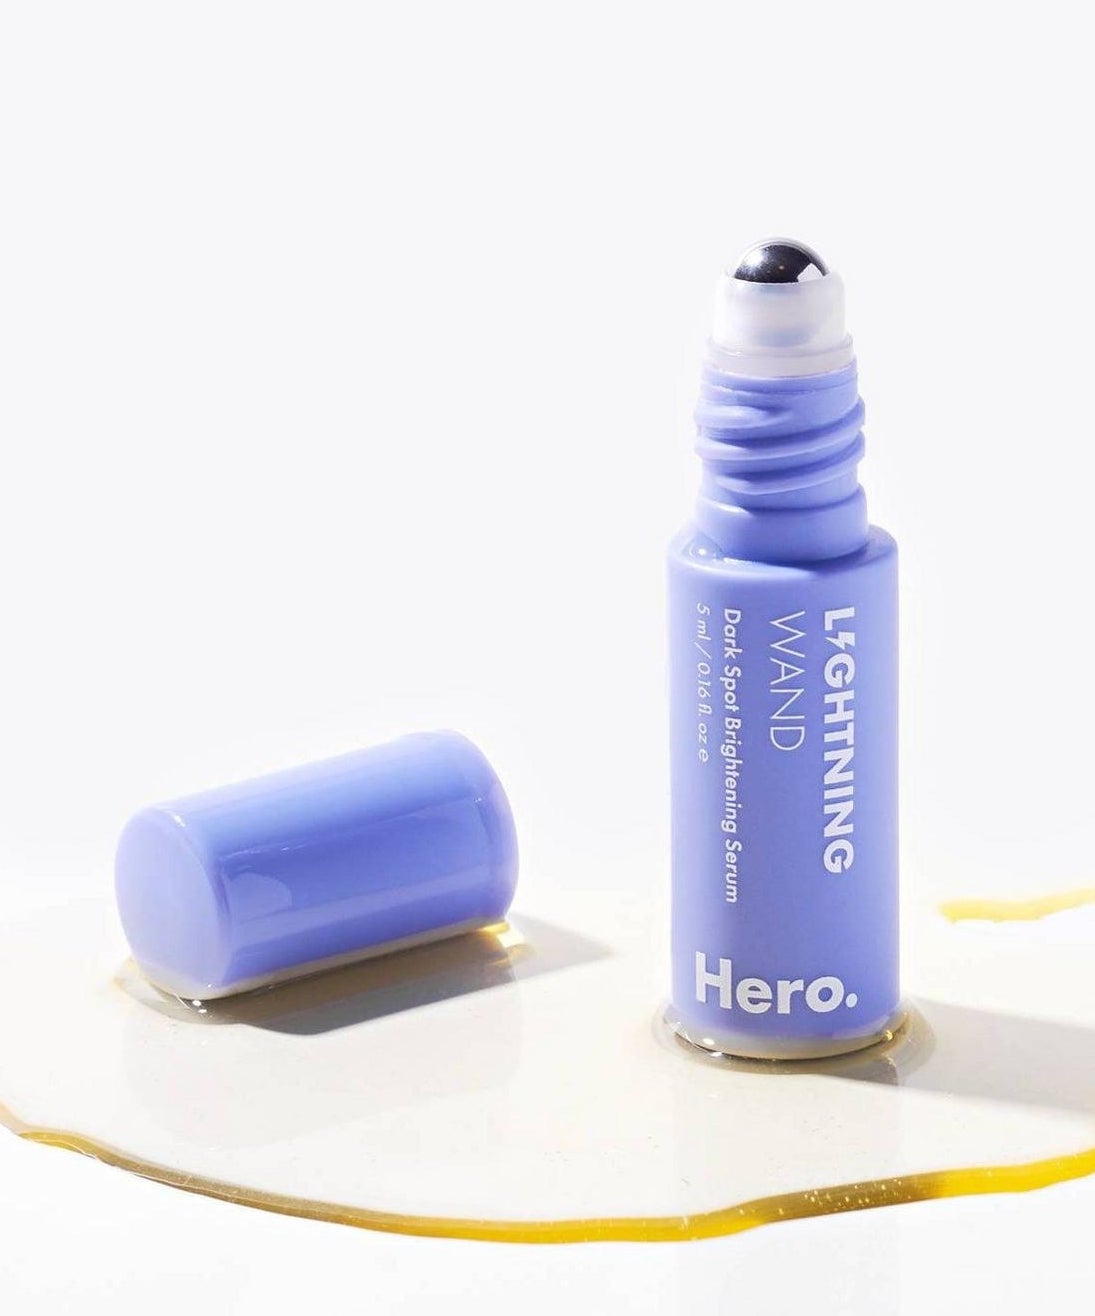 The Hero Cosmetics lightning wand mini serum